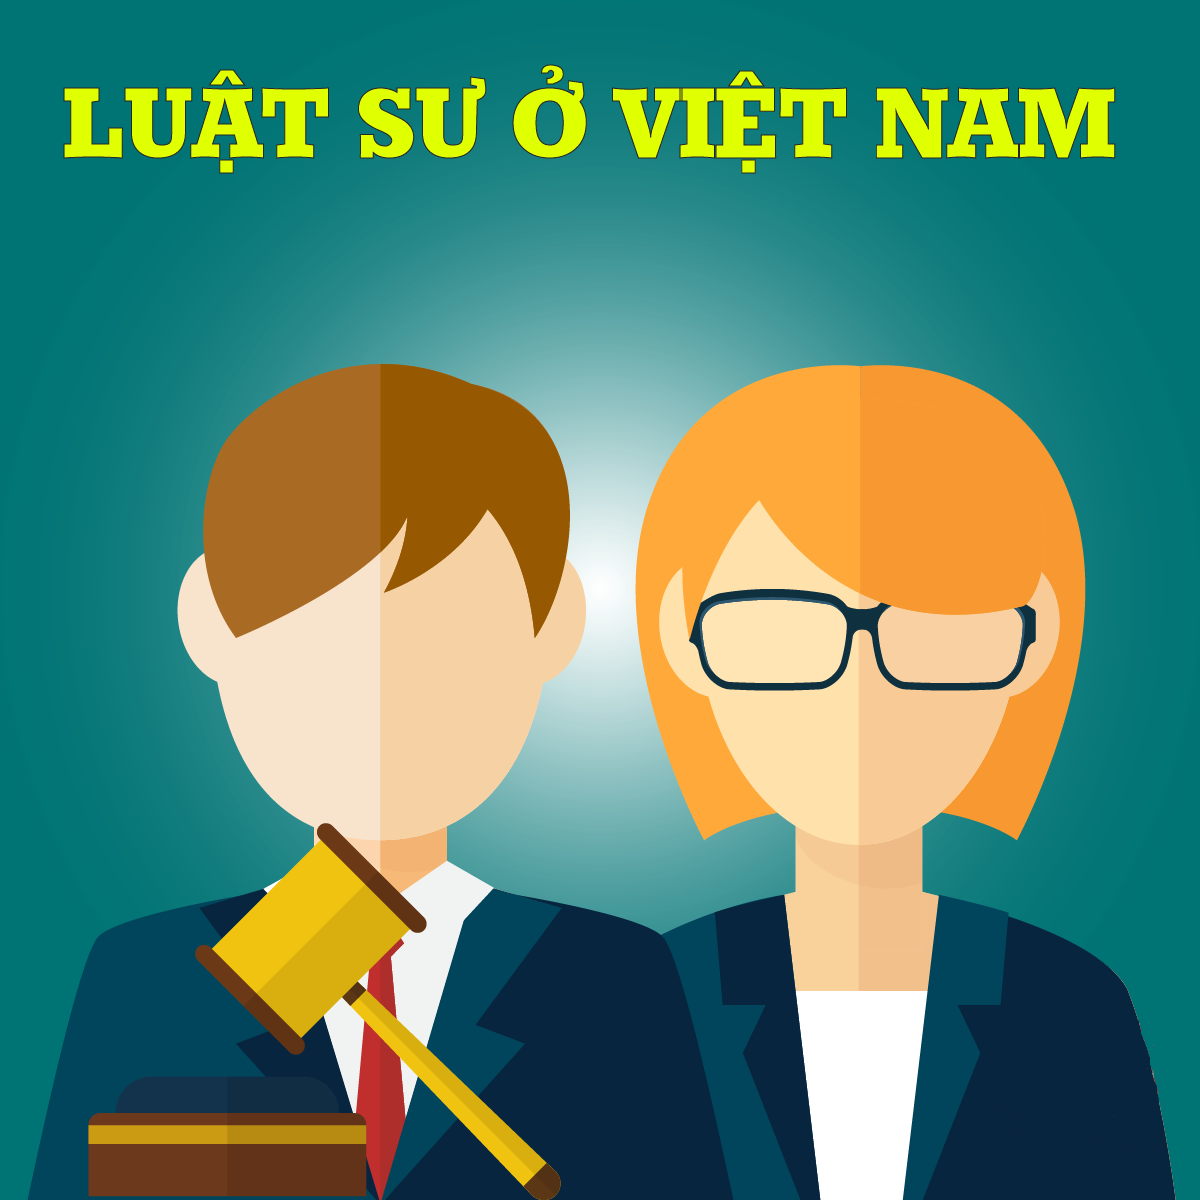 Thu nhập của người luật sư ở Việt Nam